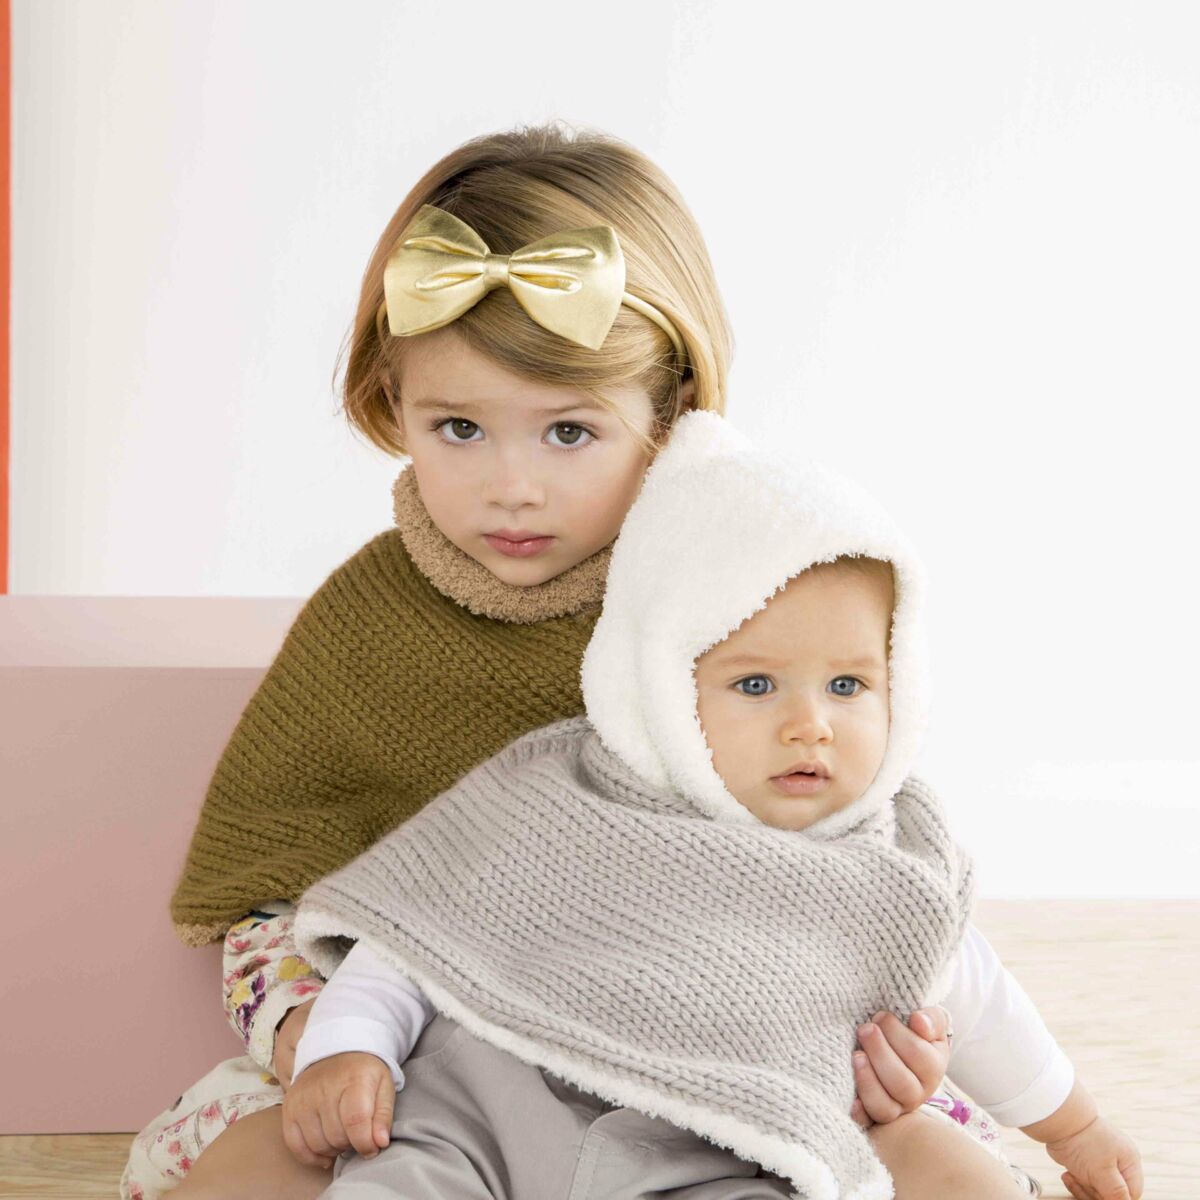 Tricoter poncho pour bébé, le tuto - Le blog de Ladylaine